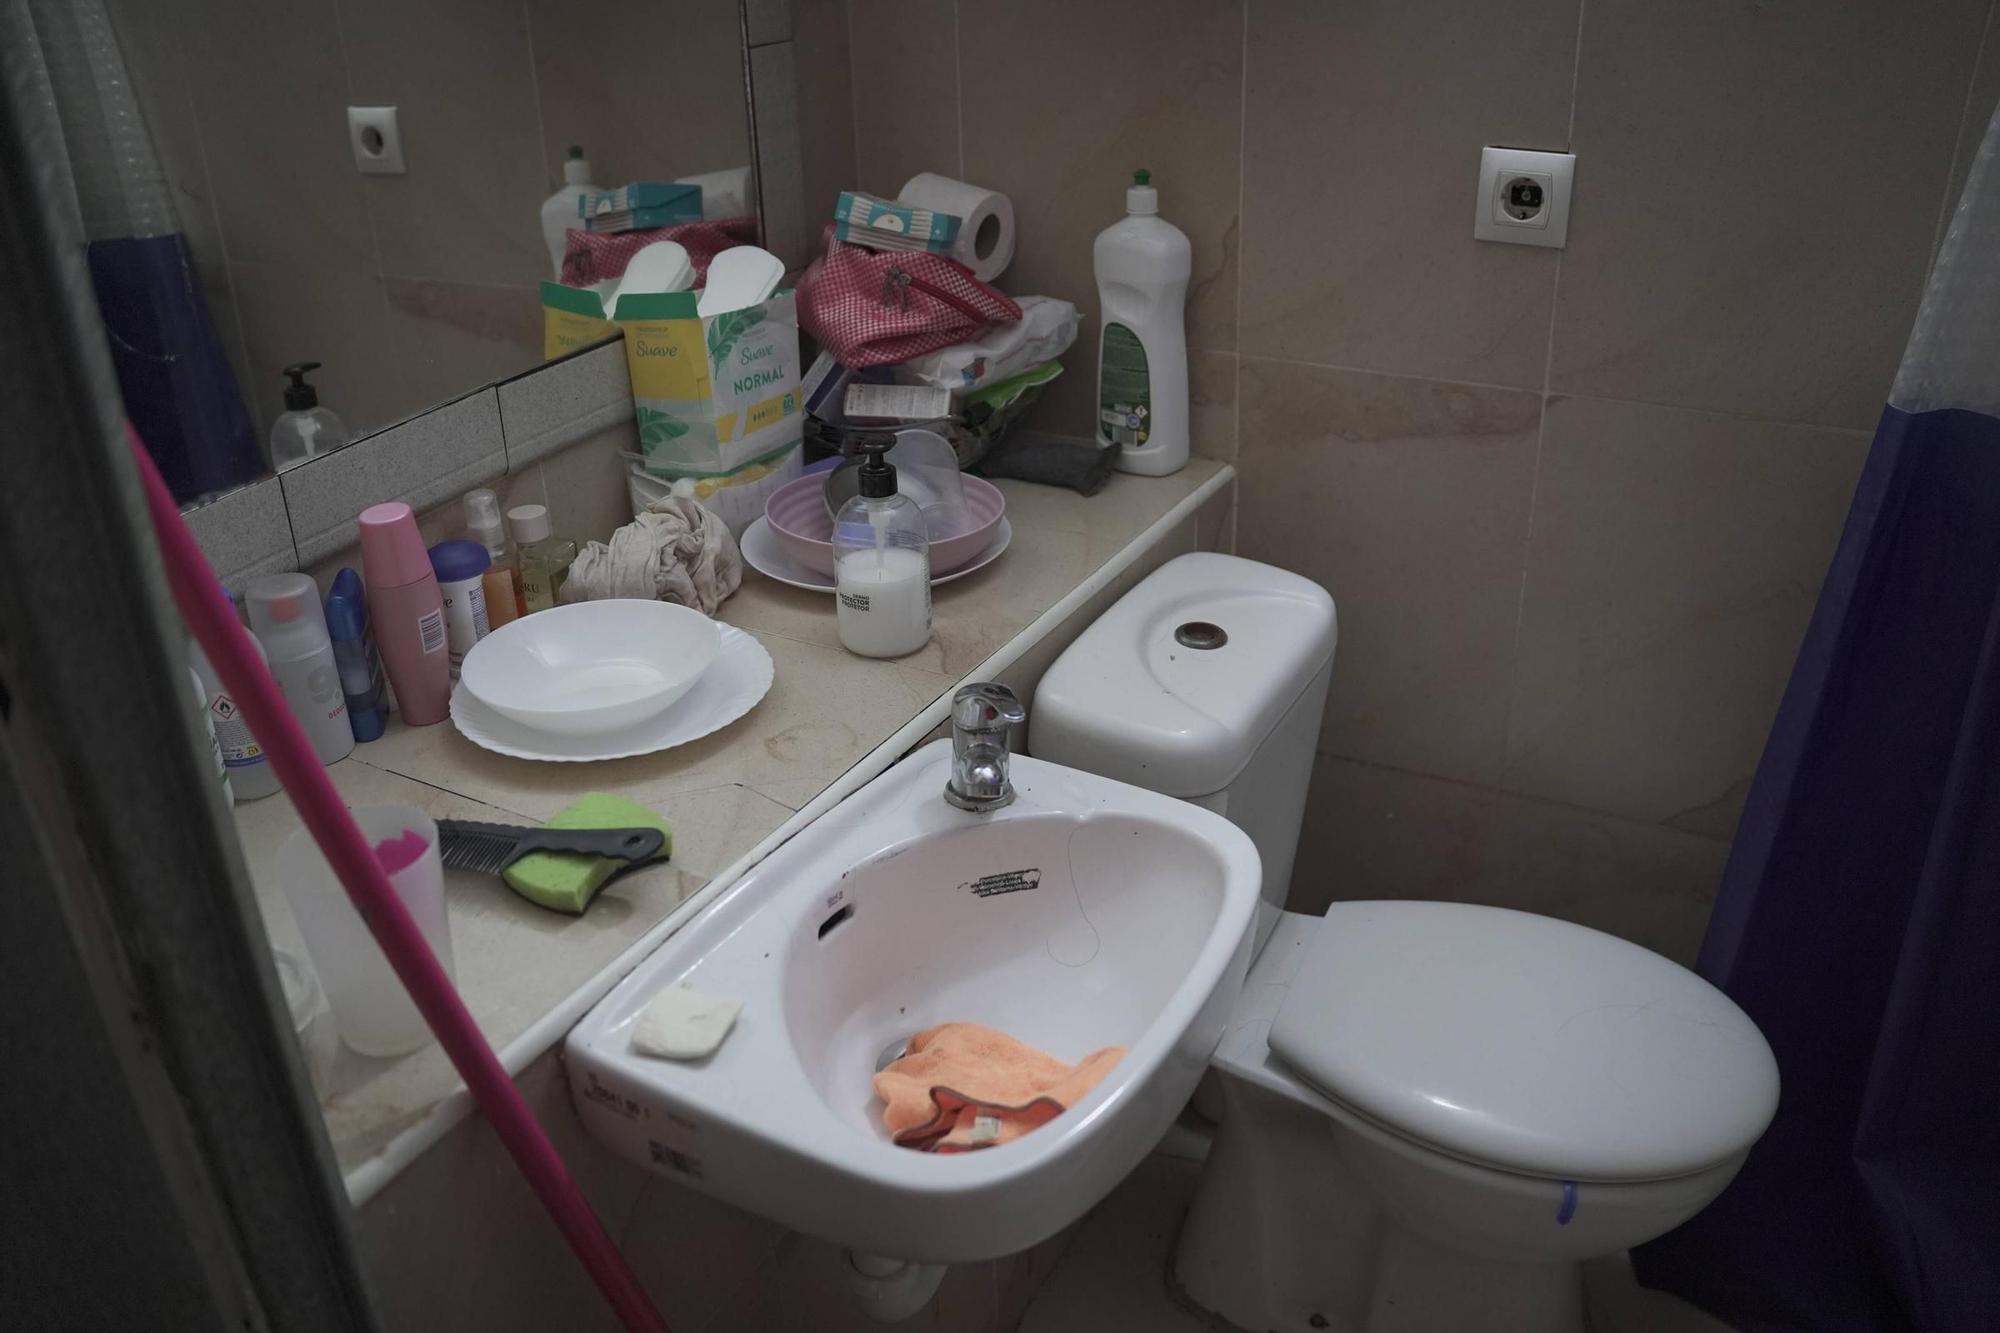 FOTOS | Estas son las habitaciones insalubres que alquilaba el policía local detenido en Palma